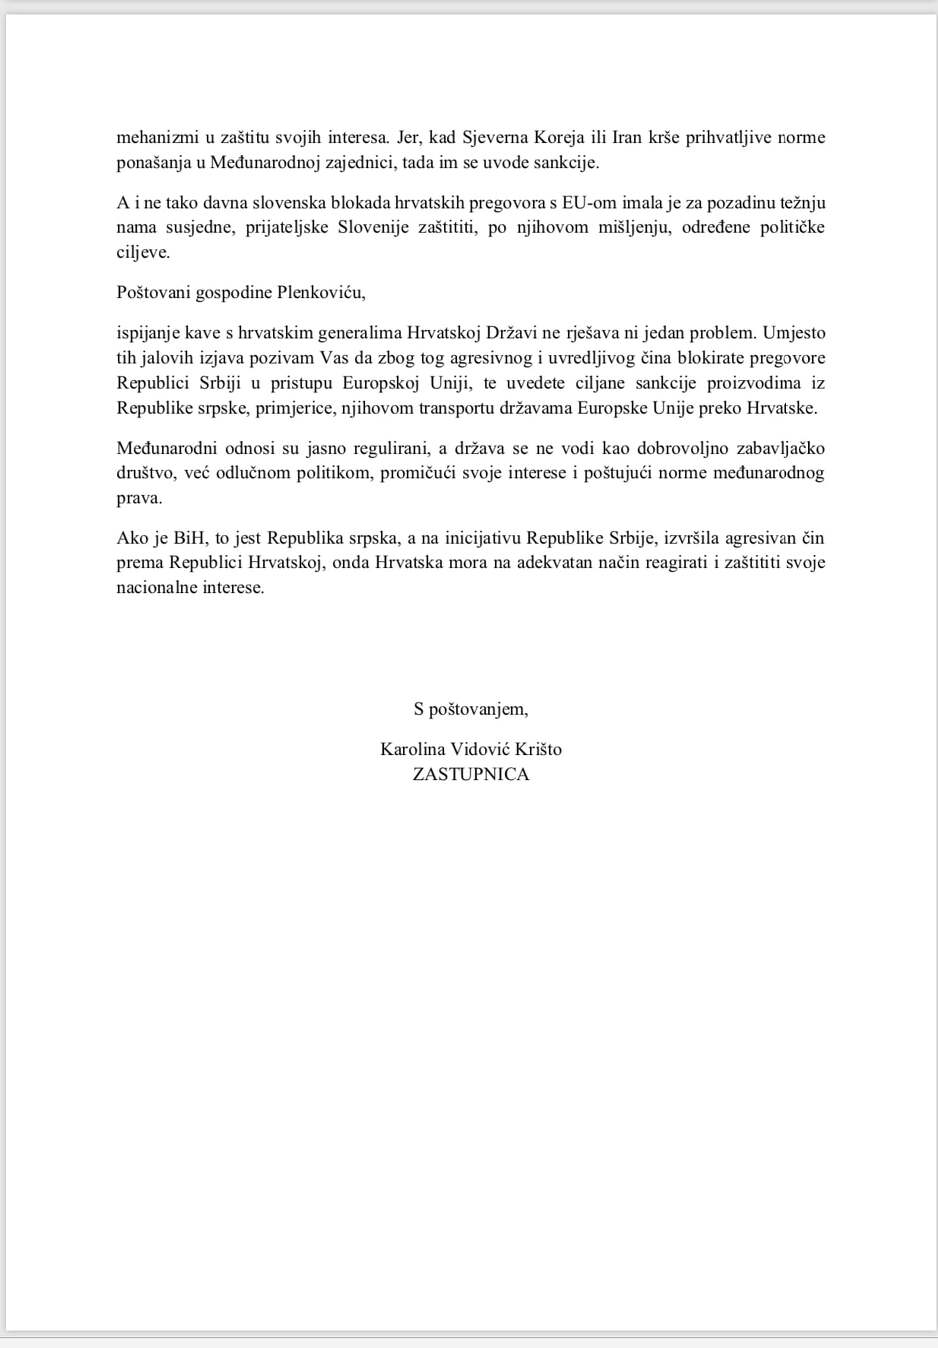 Cjelovito pismo zastupnice Andreju Plenkoviću